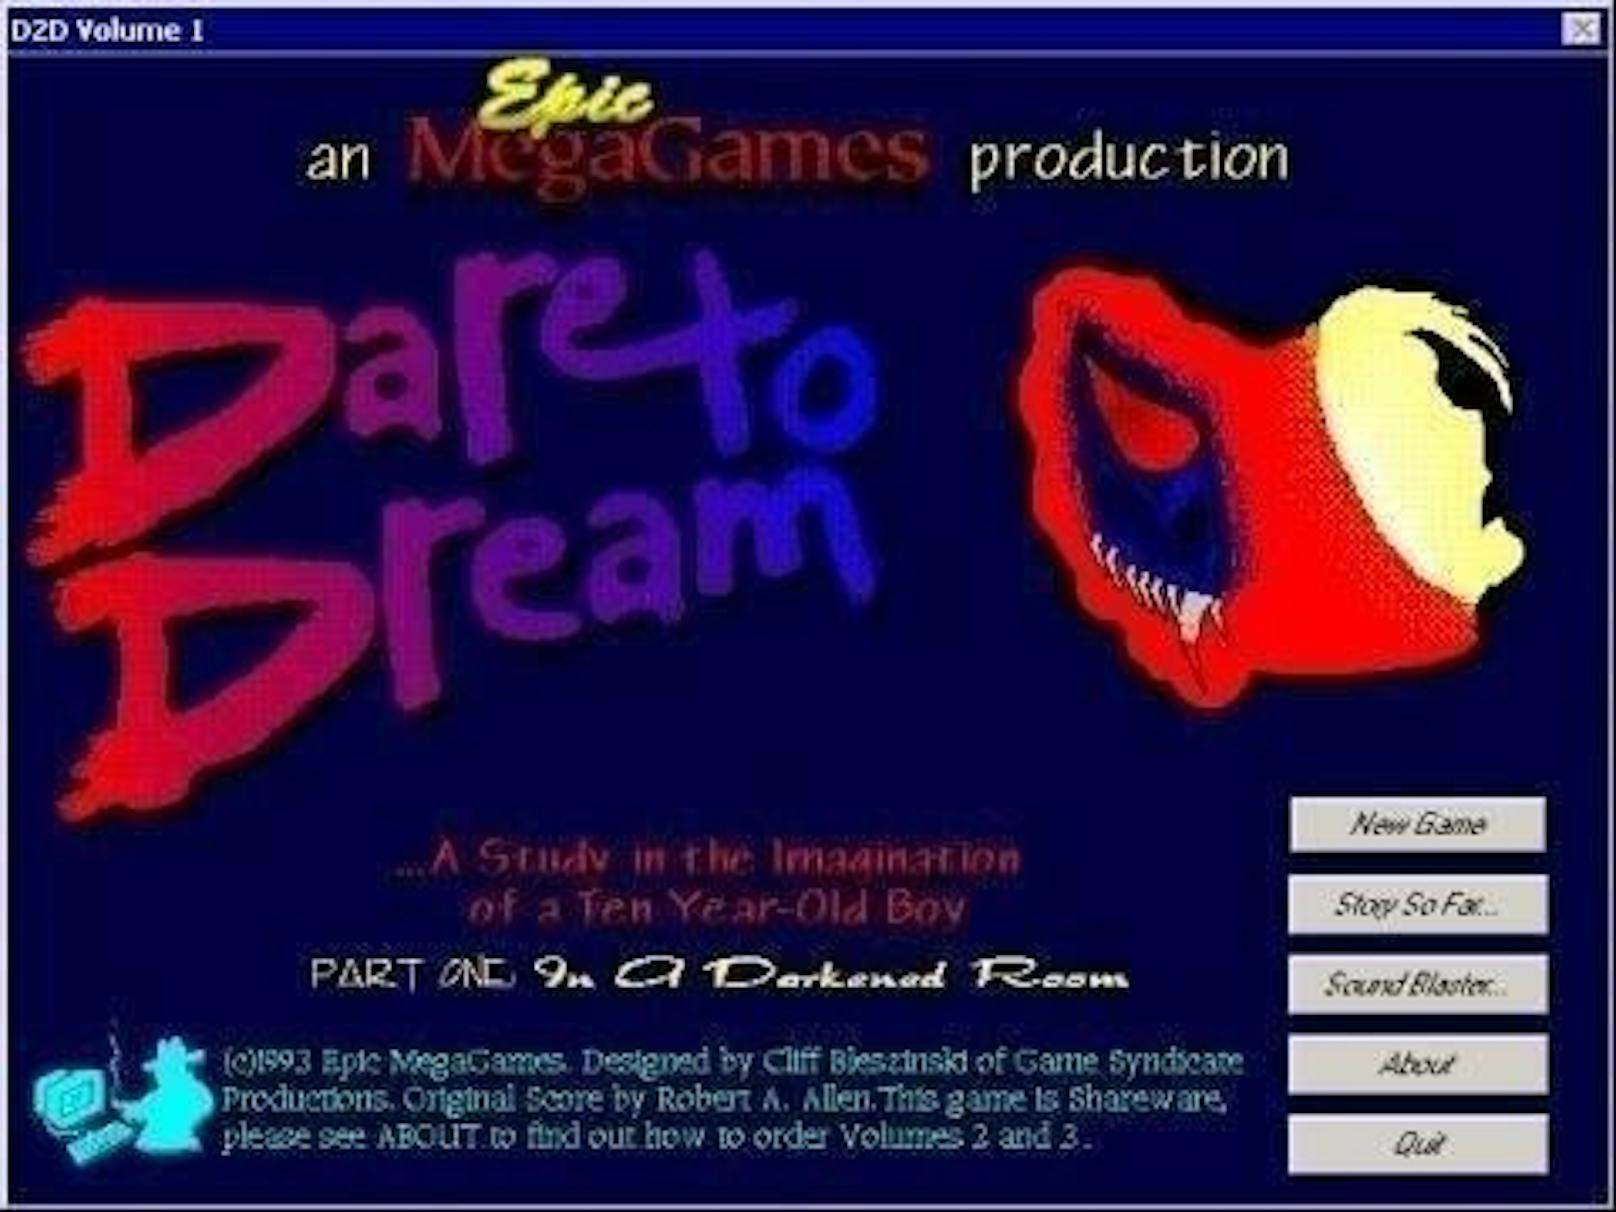 <b>1993:</b> Epic MegaGames hatte zu dieser Zeit rund 20 Mitarbeiter. Darunter waren Entwickler, Künstler, Designer und Komponisten. Mit dabei war auch der damals 17-jährige Cliff Bleszinski, der eingestellt wurde, nachdem er Sweeney sein Spiel "Dare to Dream" zeigte. Im Spiel verirrt sich die Hauptfigur in seine eigene Traumwelt.